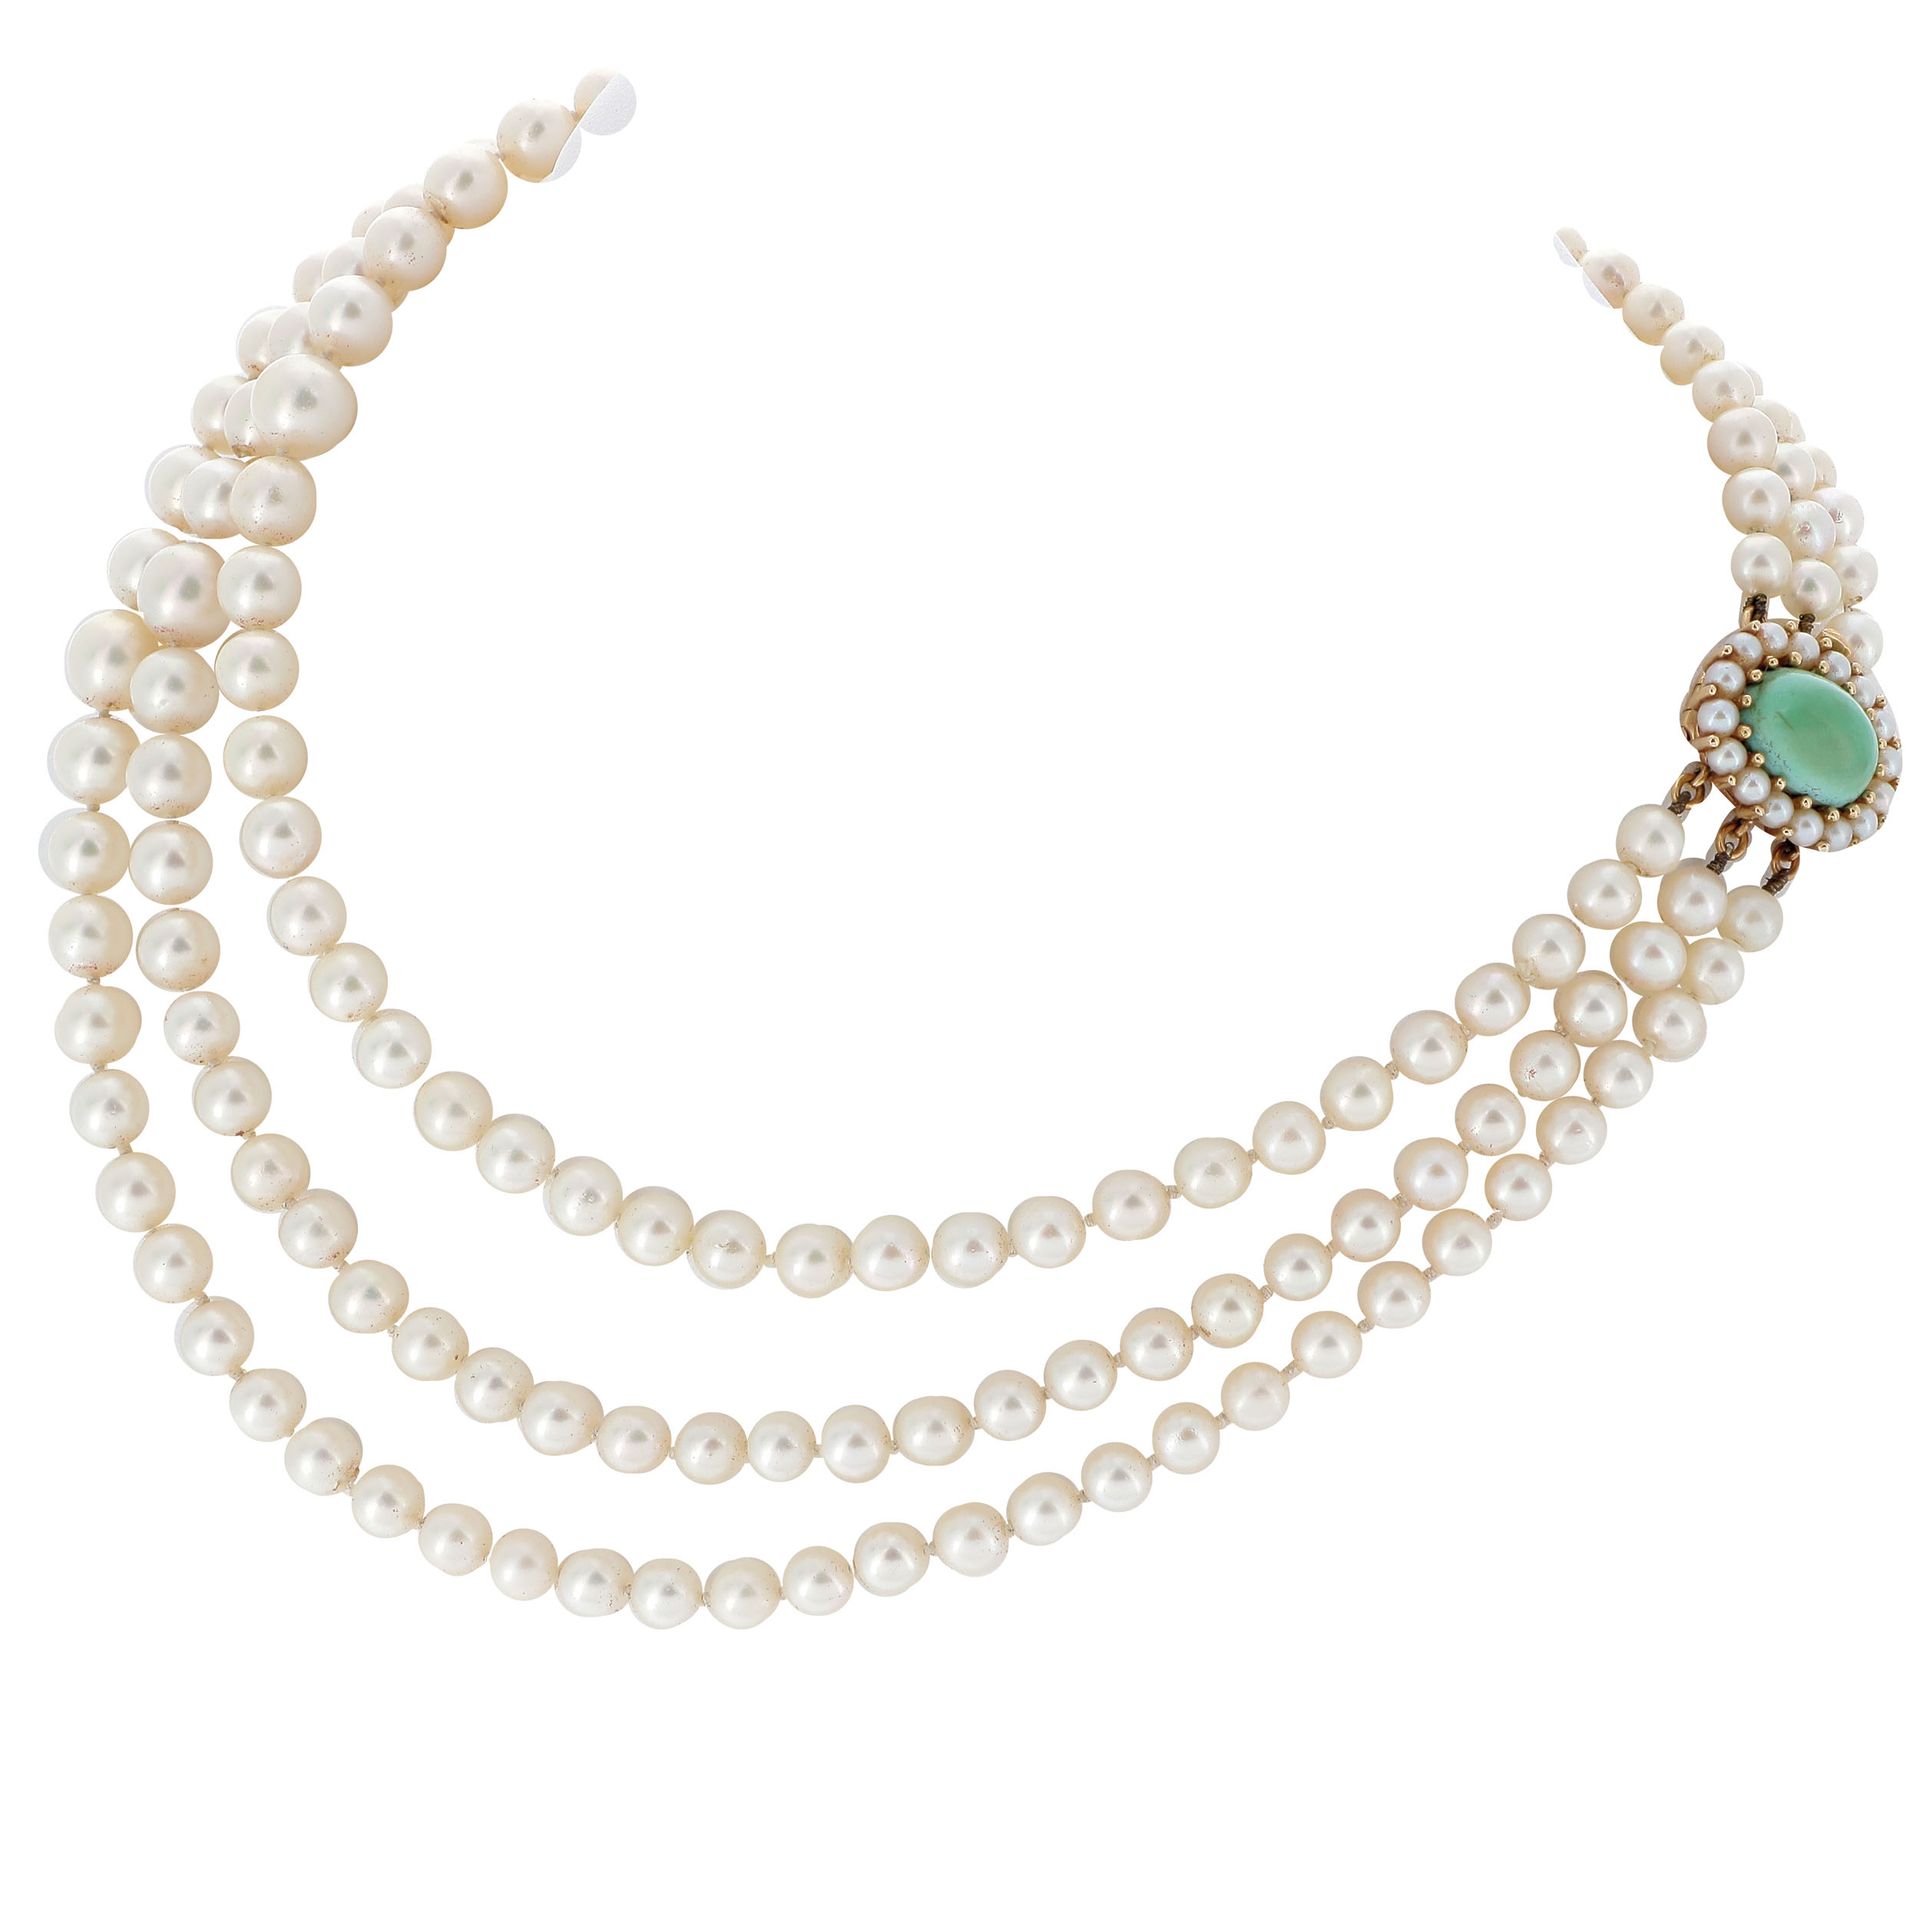 Null 三排养殖珍珠项链

由三排养殖珍珠组成，黄金表扣，以珍珠环绕的凸圆形绿松石为中心。

一条三条养殖珍珠的项链。



RC :

珍珠的直径：5.6 &hellip;